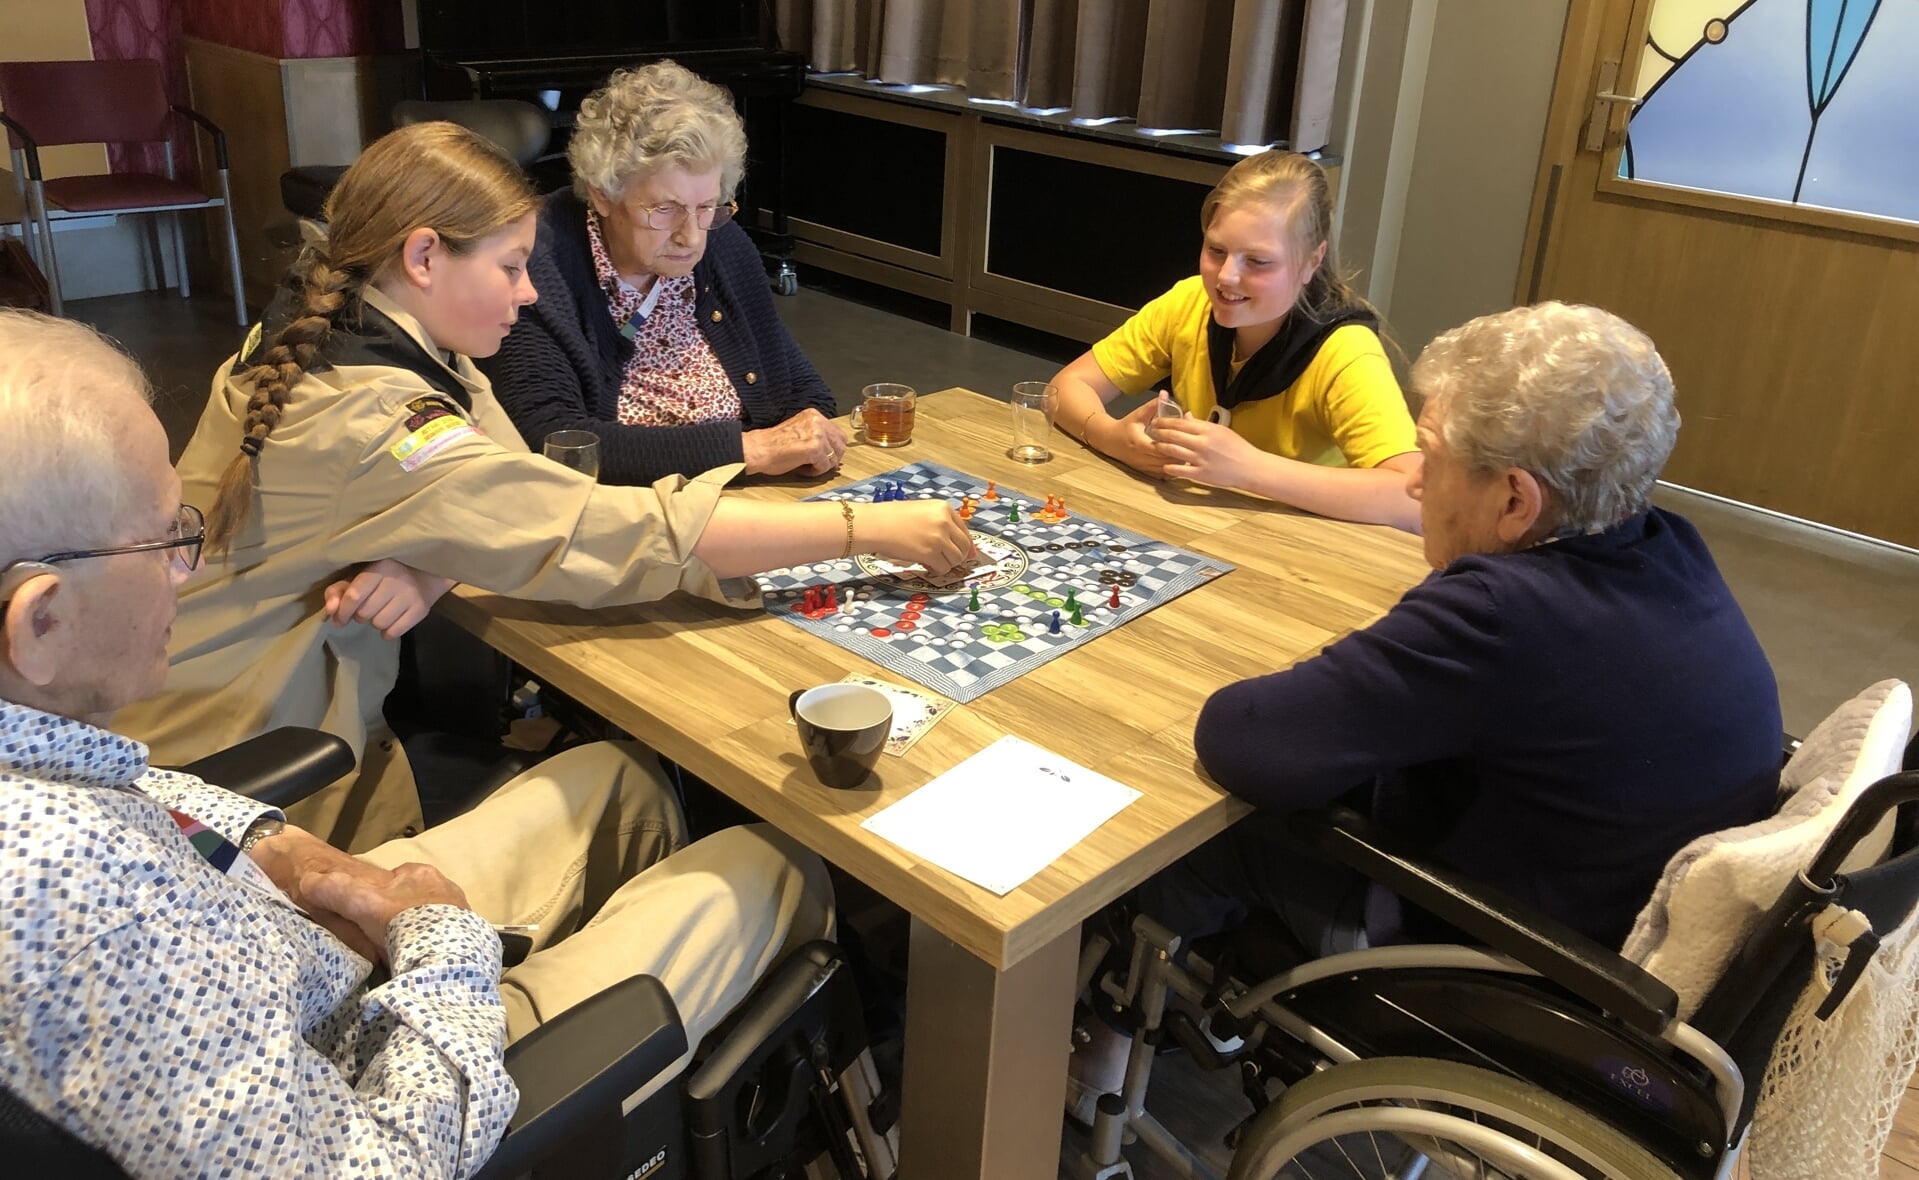 Gidsen van Scouting Boxtel spelen gezelschapsspelletjes met bewoners van verpleeghuis Liduina.